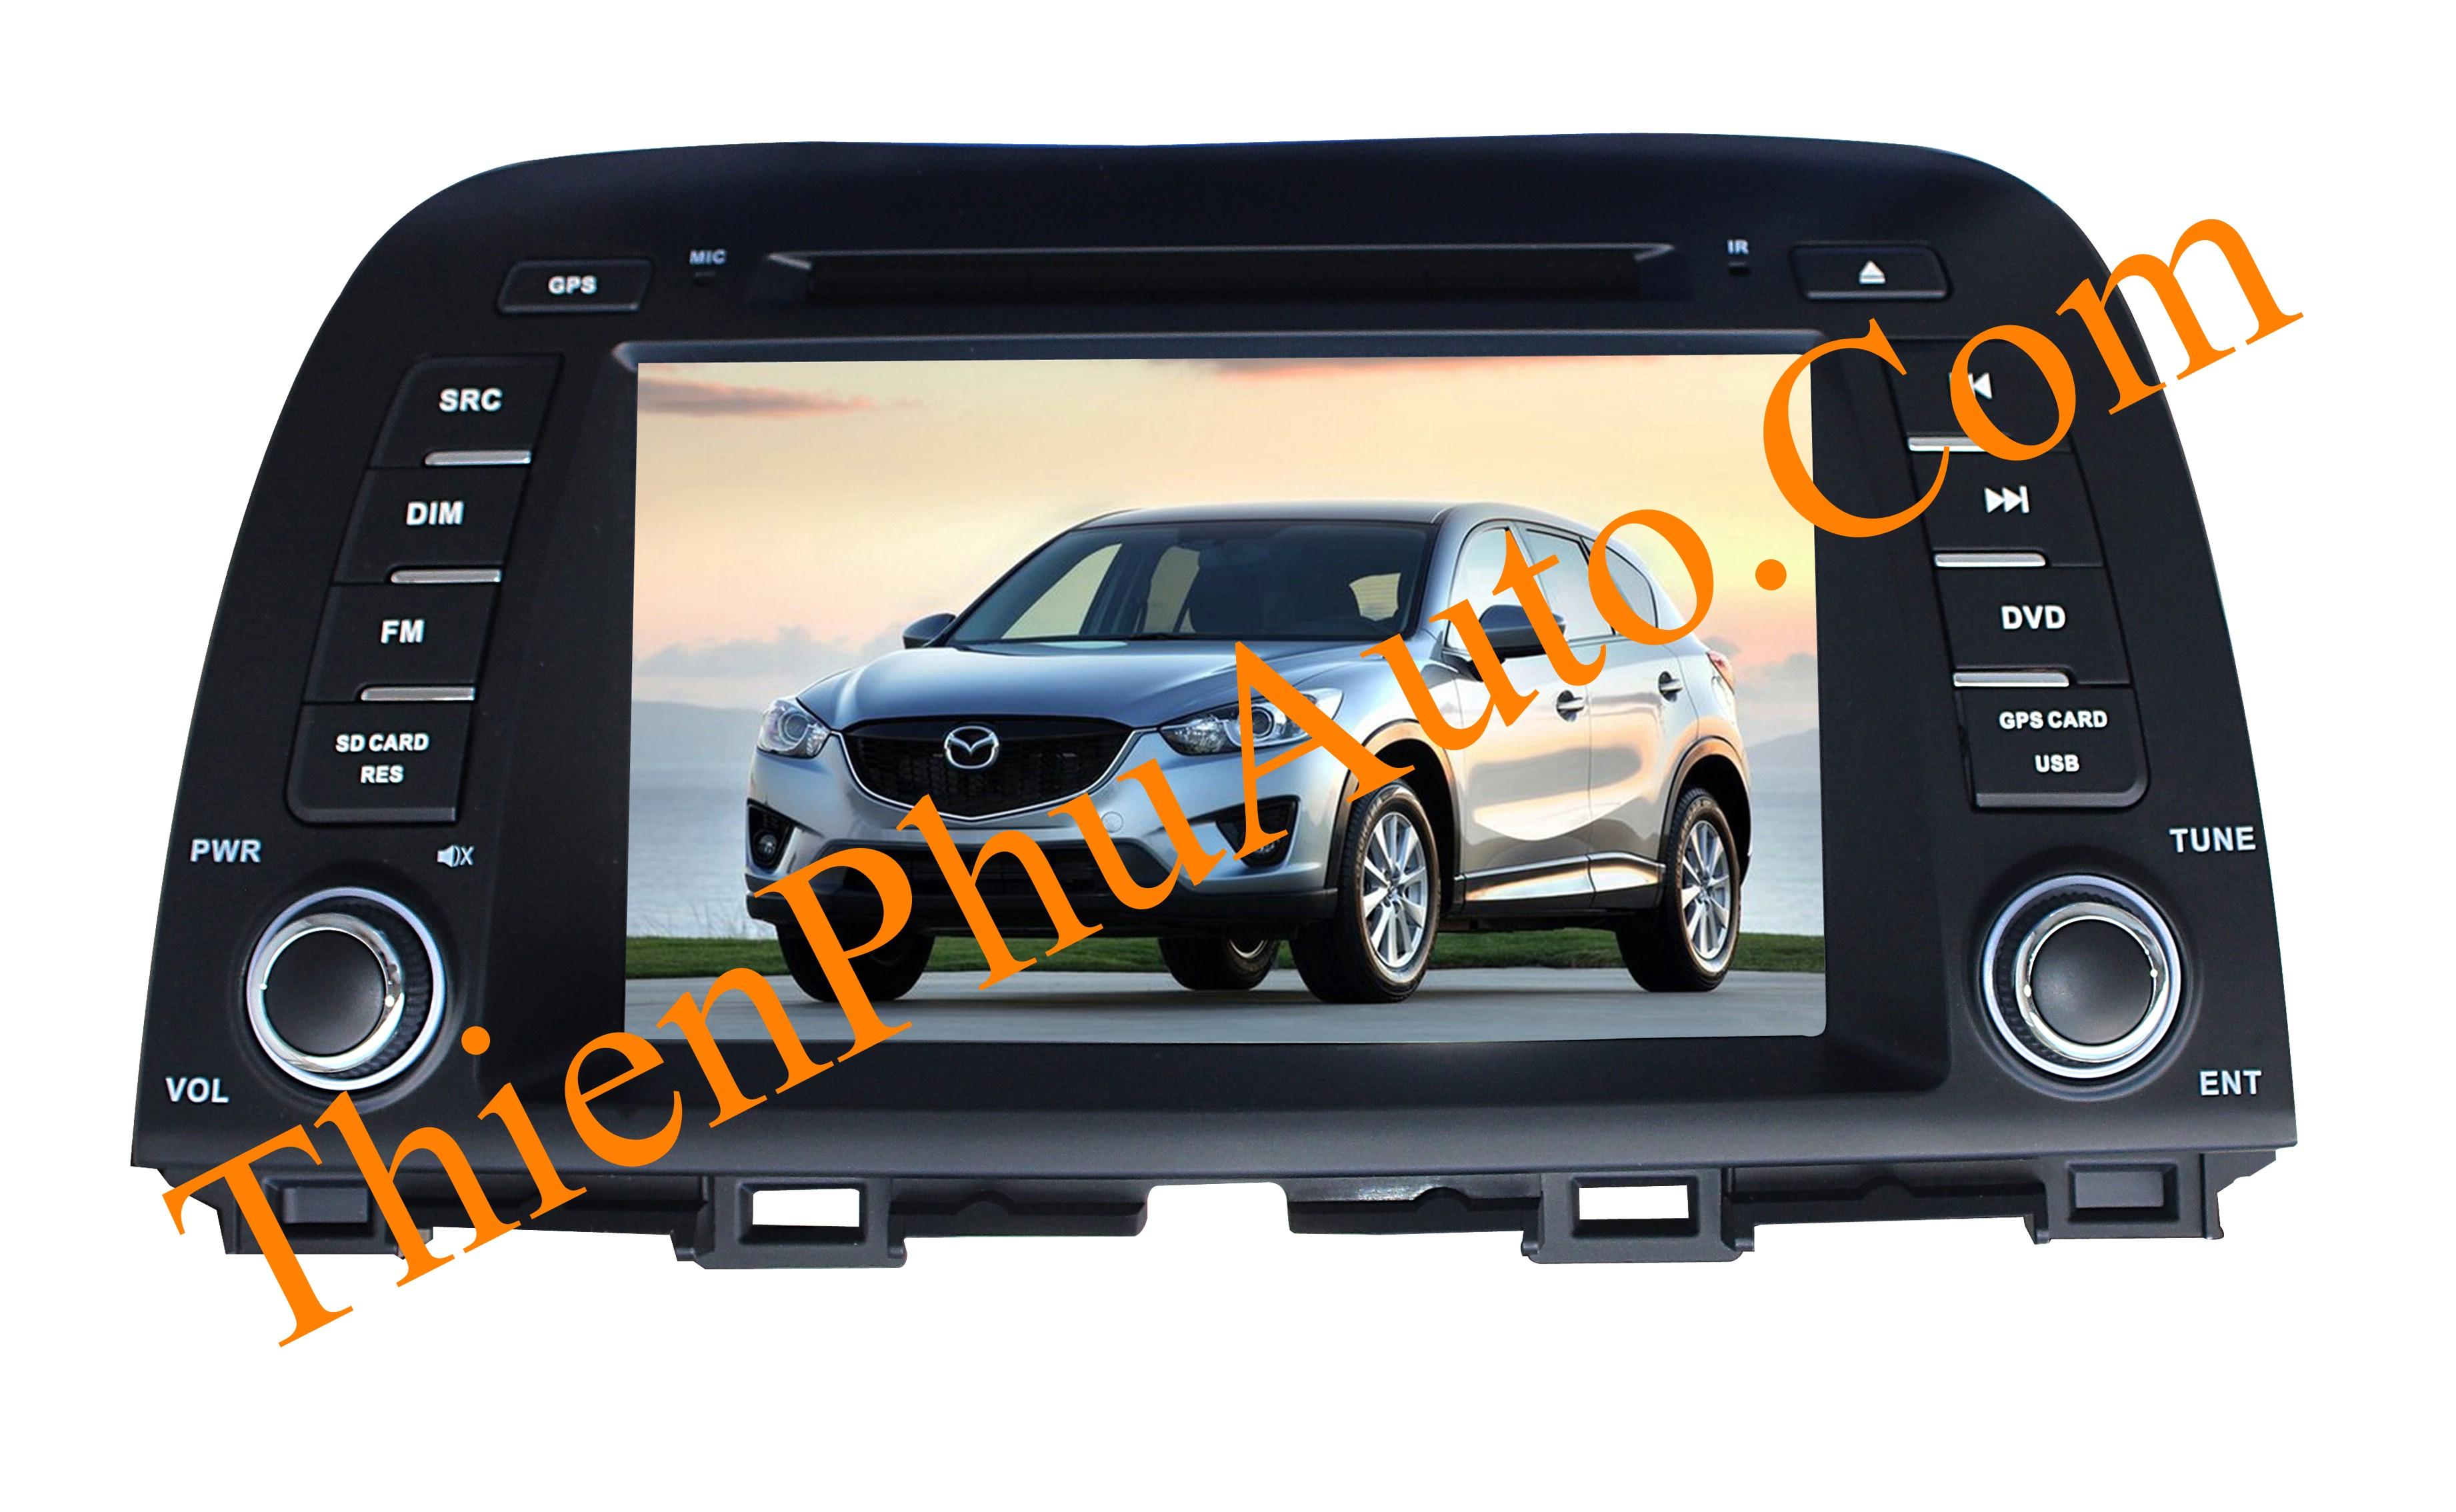 Đầu DVD liền màn hình theo xe ô tô Mazda CX5 2012-2013, có canbus cho âm ly theo xe, cắm giắc nguyên bản